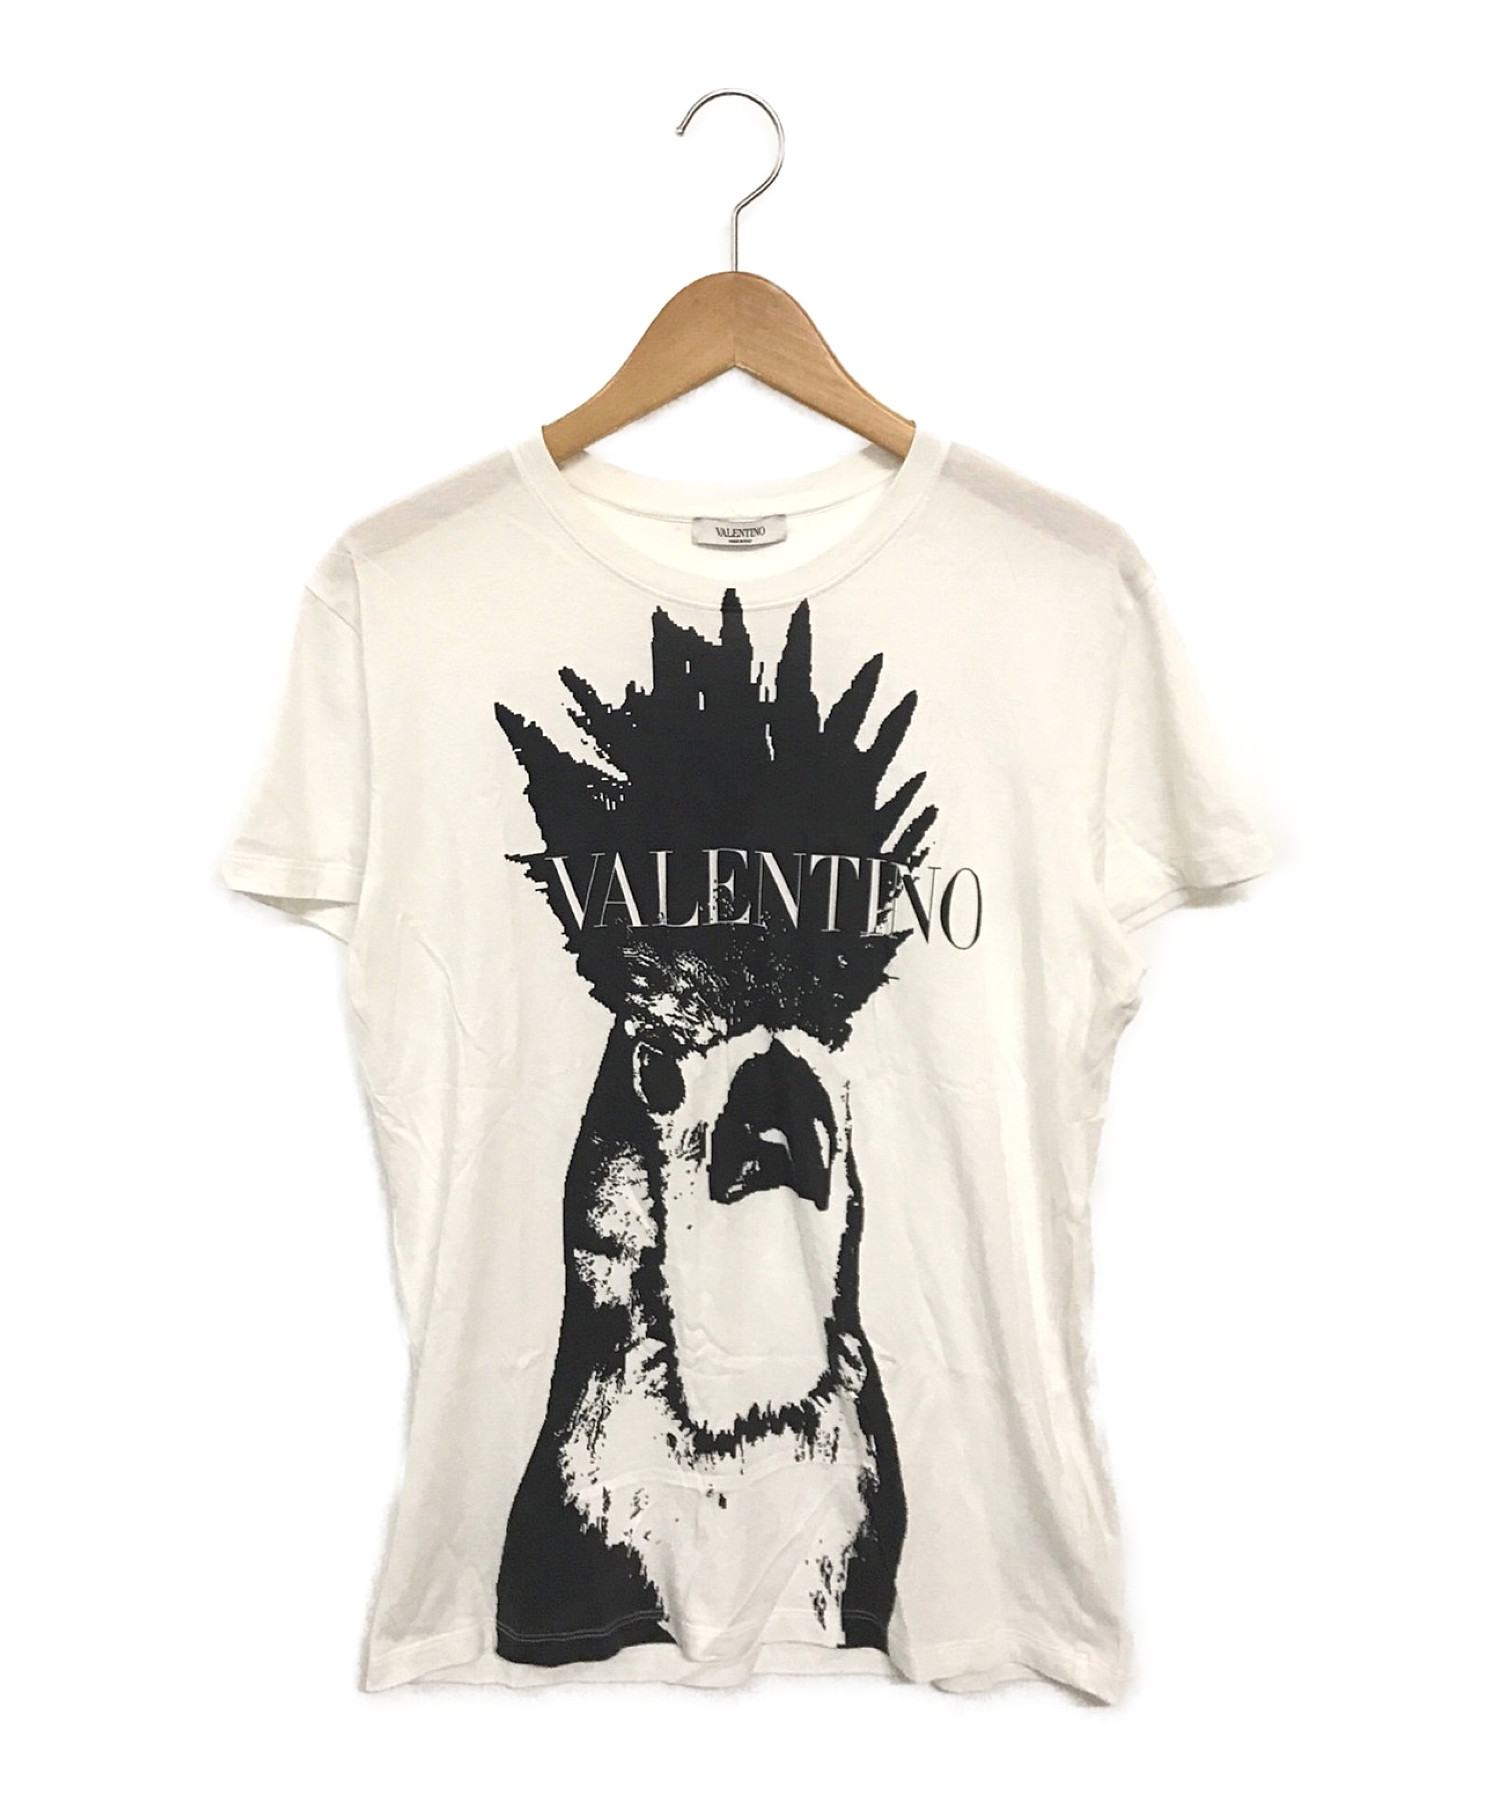 VALENTINO (ヴァレンティノ) カーディナルコットンプリントTシャツ ホワイト サイズ:S